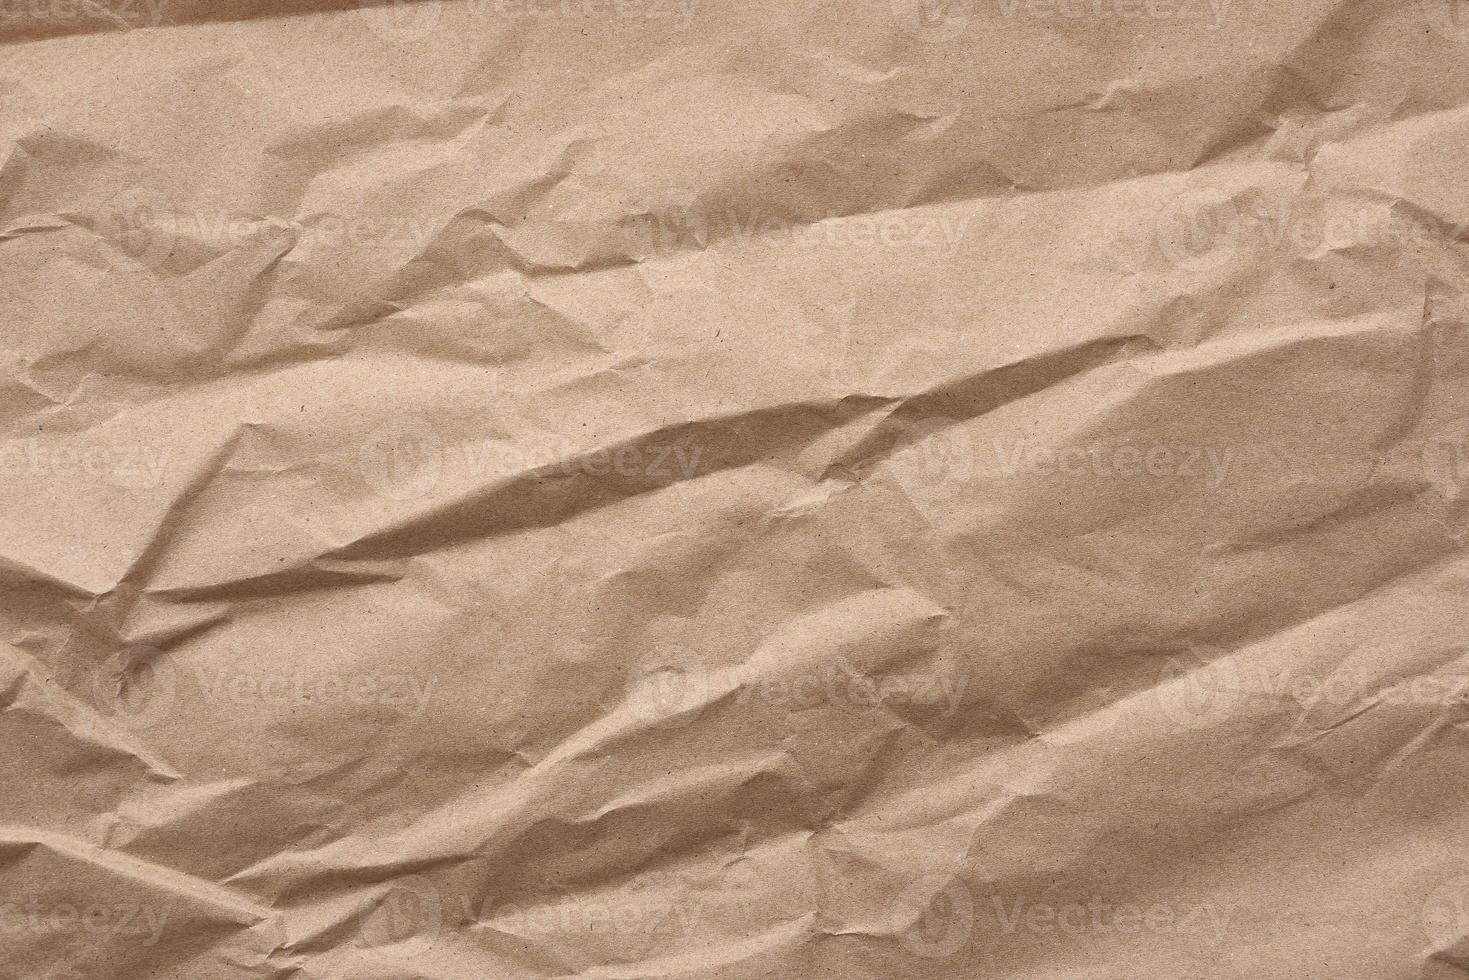 fragmento de folha em branco amassada de papel kraft de embrulho marrom foto